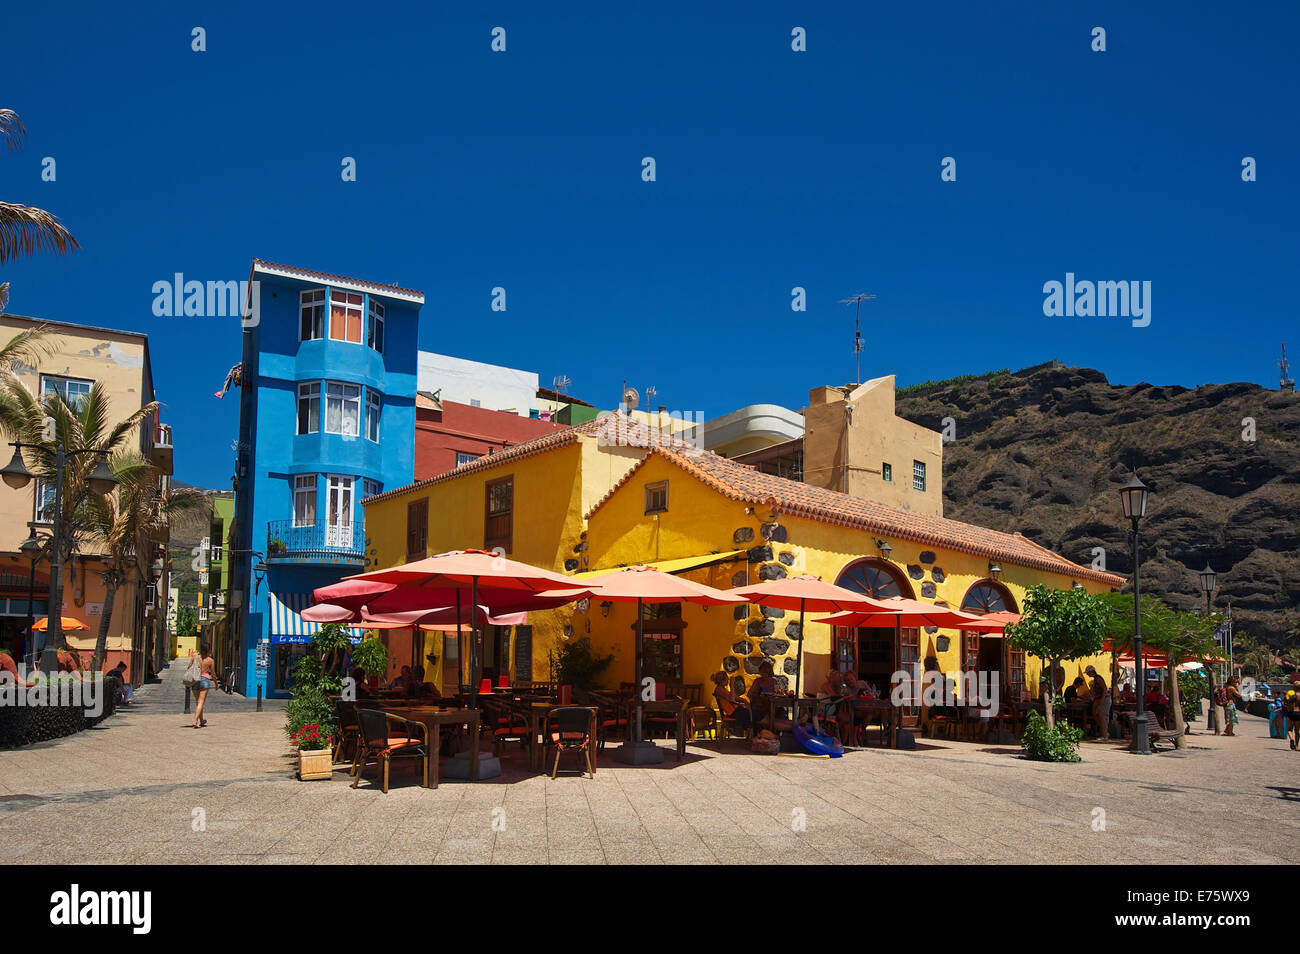 Taberna del Puerto, Puerto de Tazacorte, La Palma, Canary Islands, Spain Stock Photo